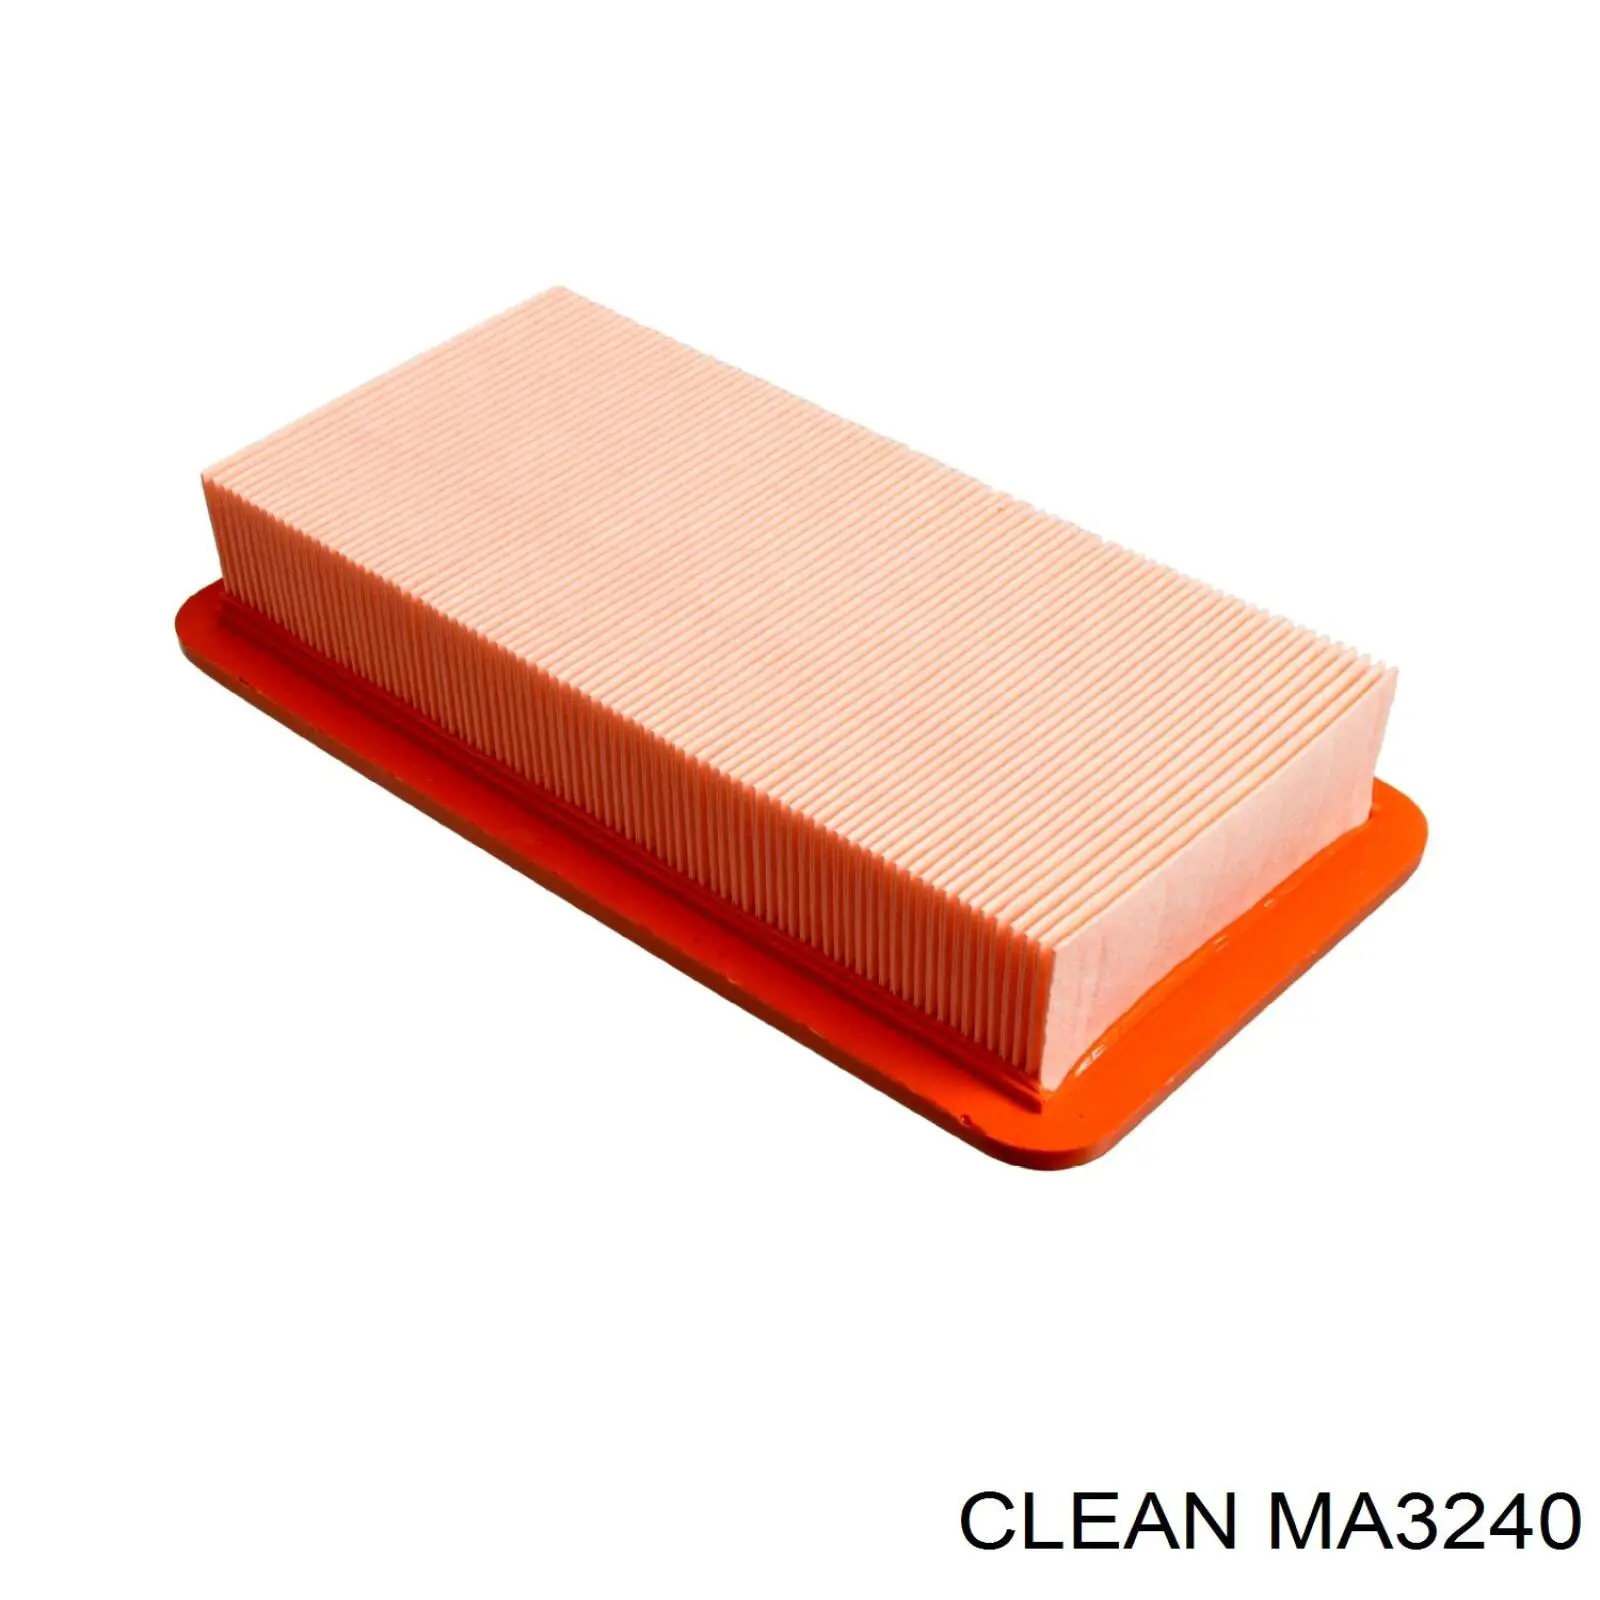 MA3240 Clean filtro de aire